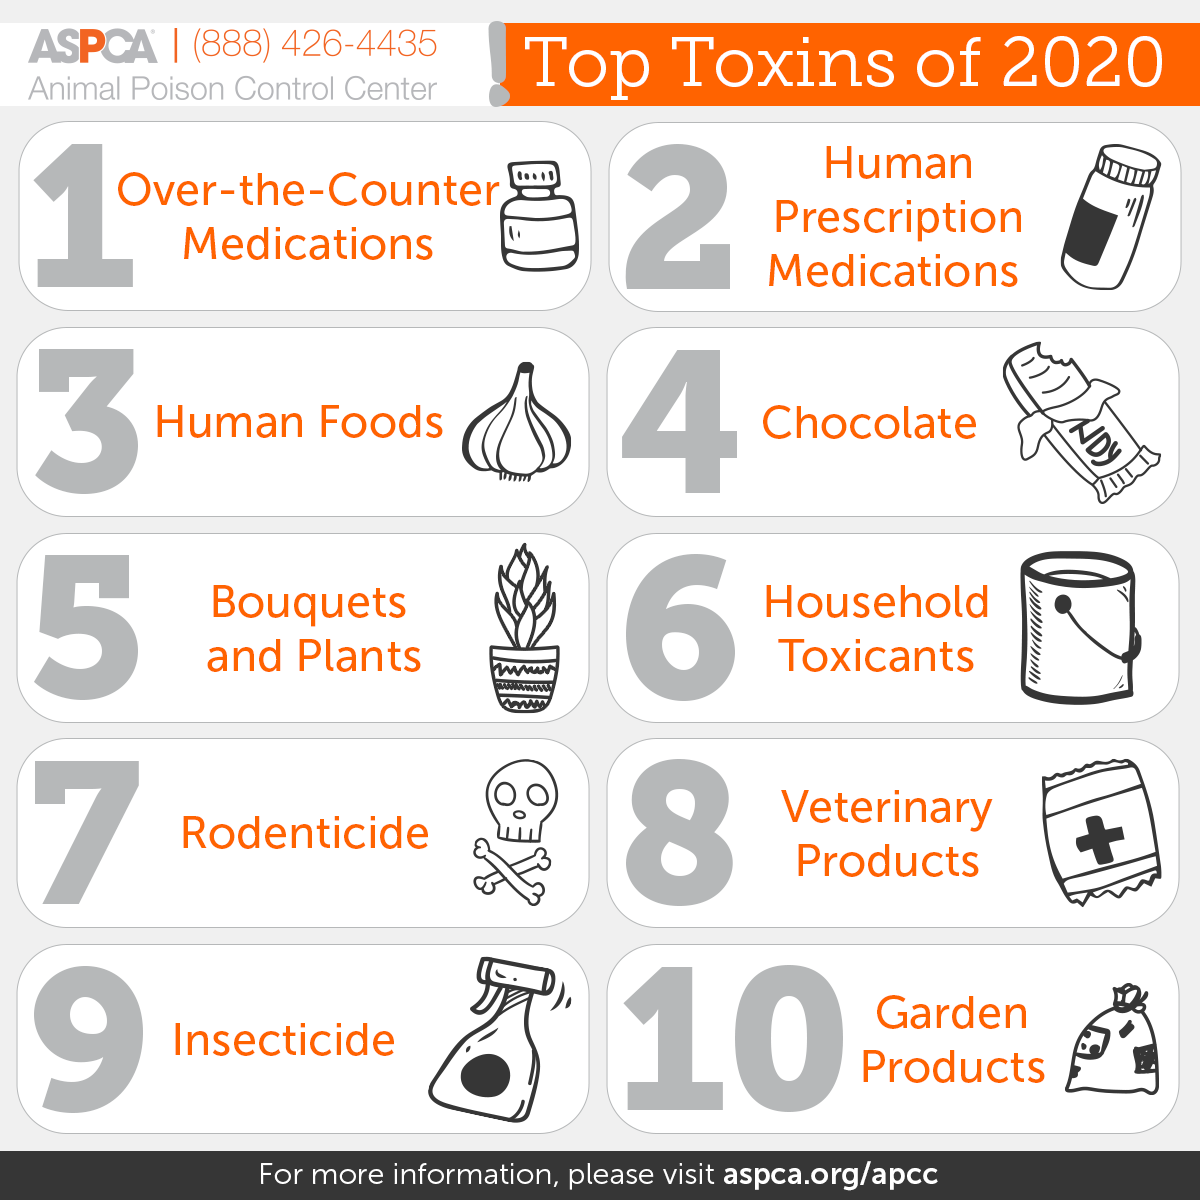 Top 10 Pet Toxins of 2020